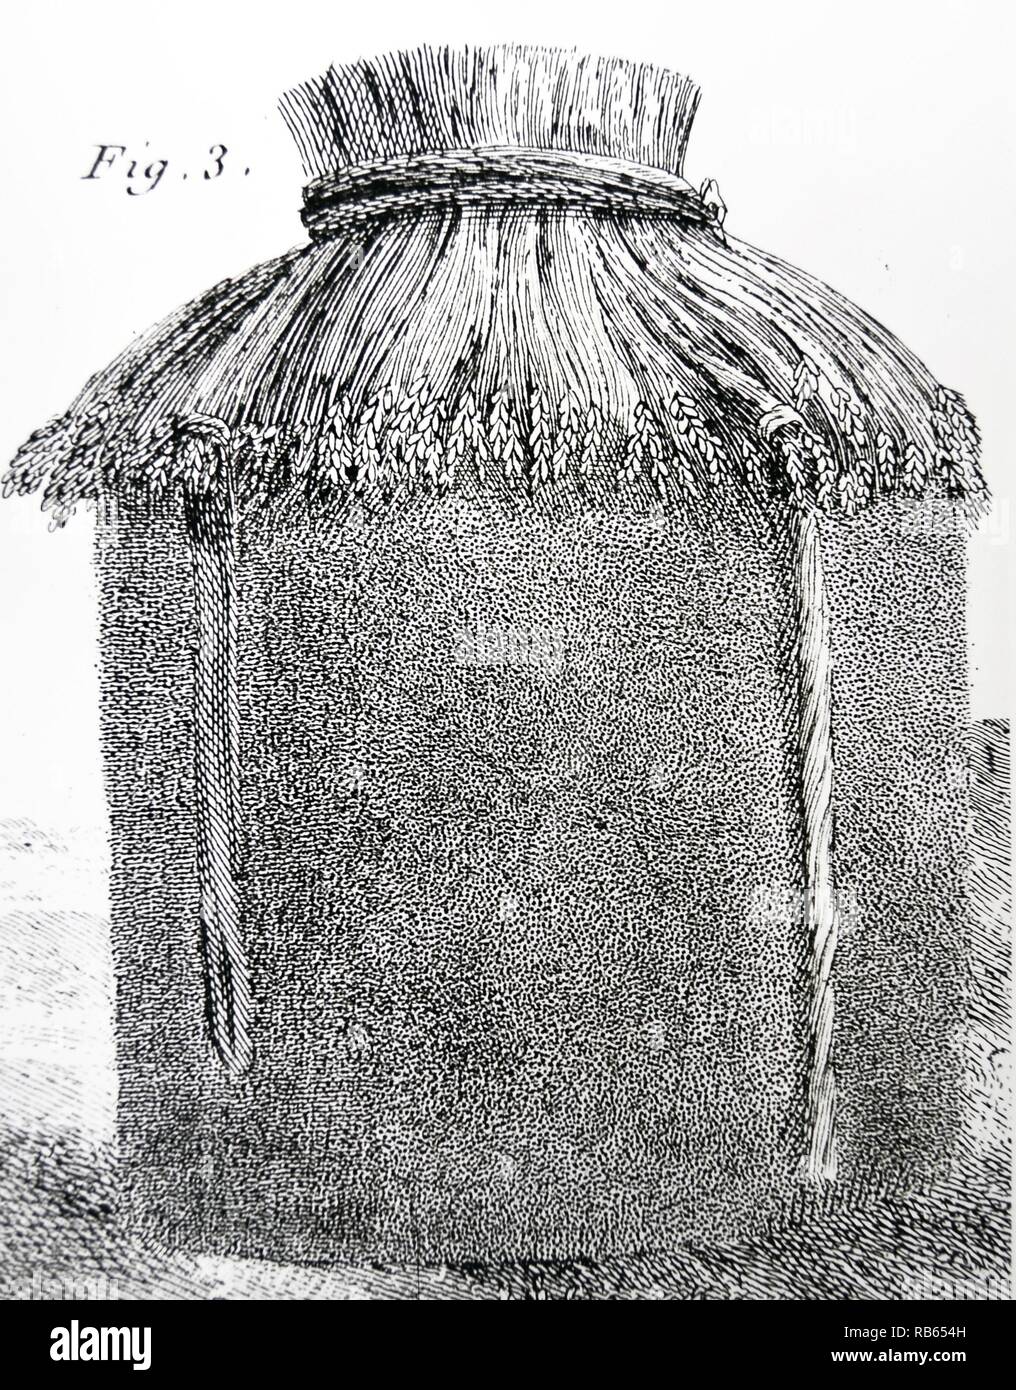 Une pile provisoires de blé : Au cours de l'hiver cette pile serait ouverte et son contenu a battu sur l'aire dans une grange. Dans ''Cours complet d'Agriculture ...'' par François Rozier, Paris, 1793-1800. Banque D'Images